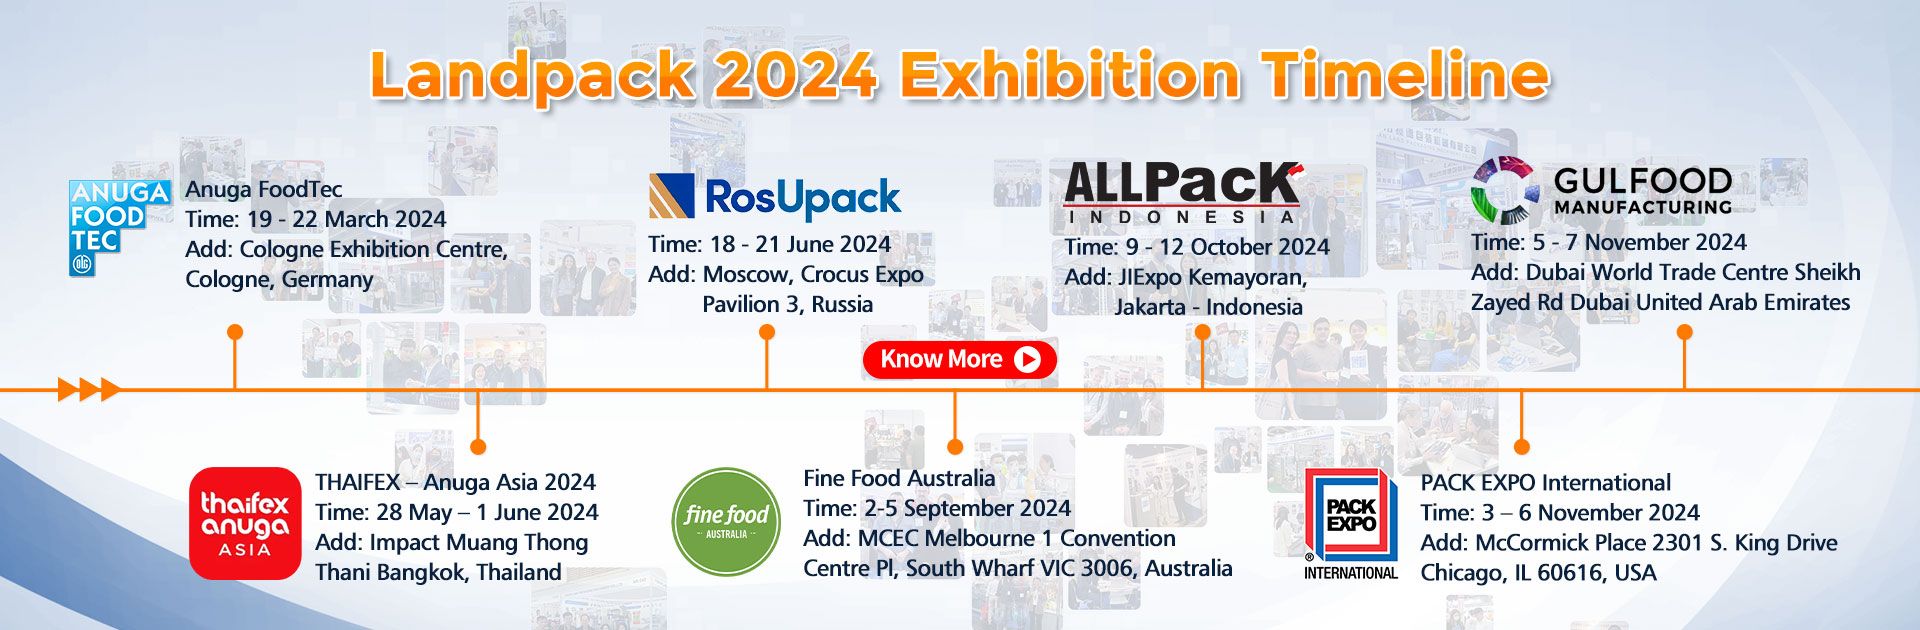 Landpack Exhibition Plan in 2024